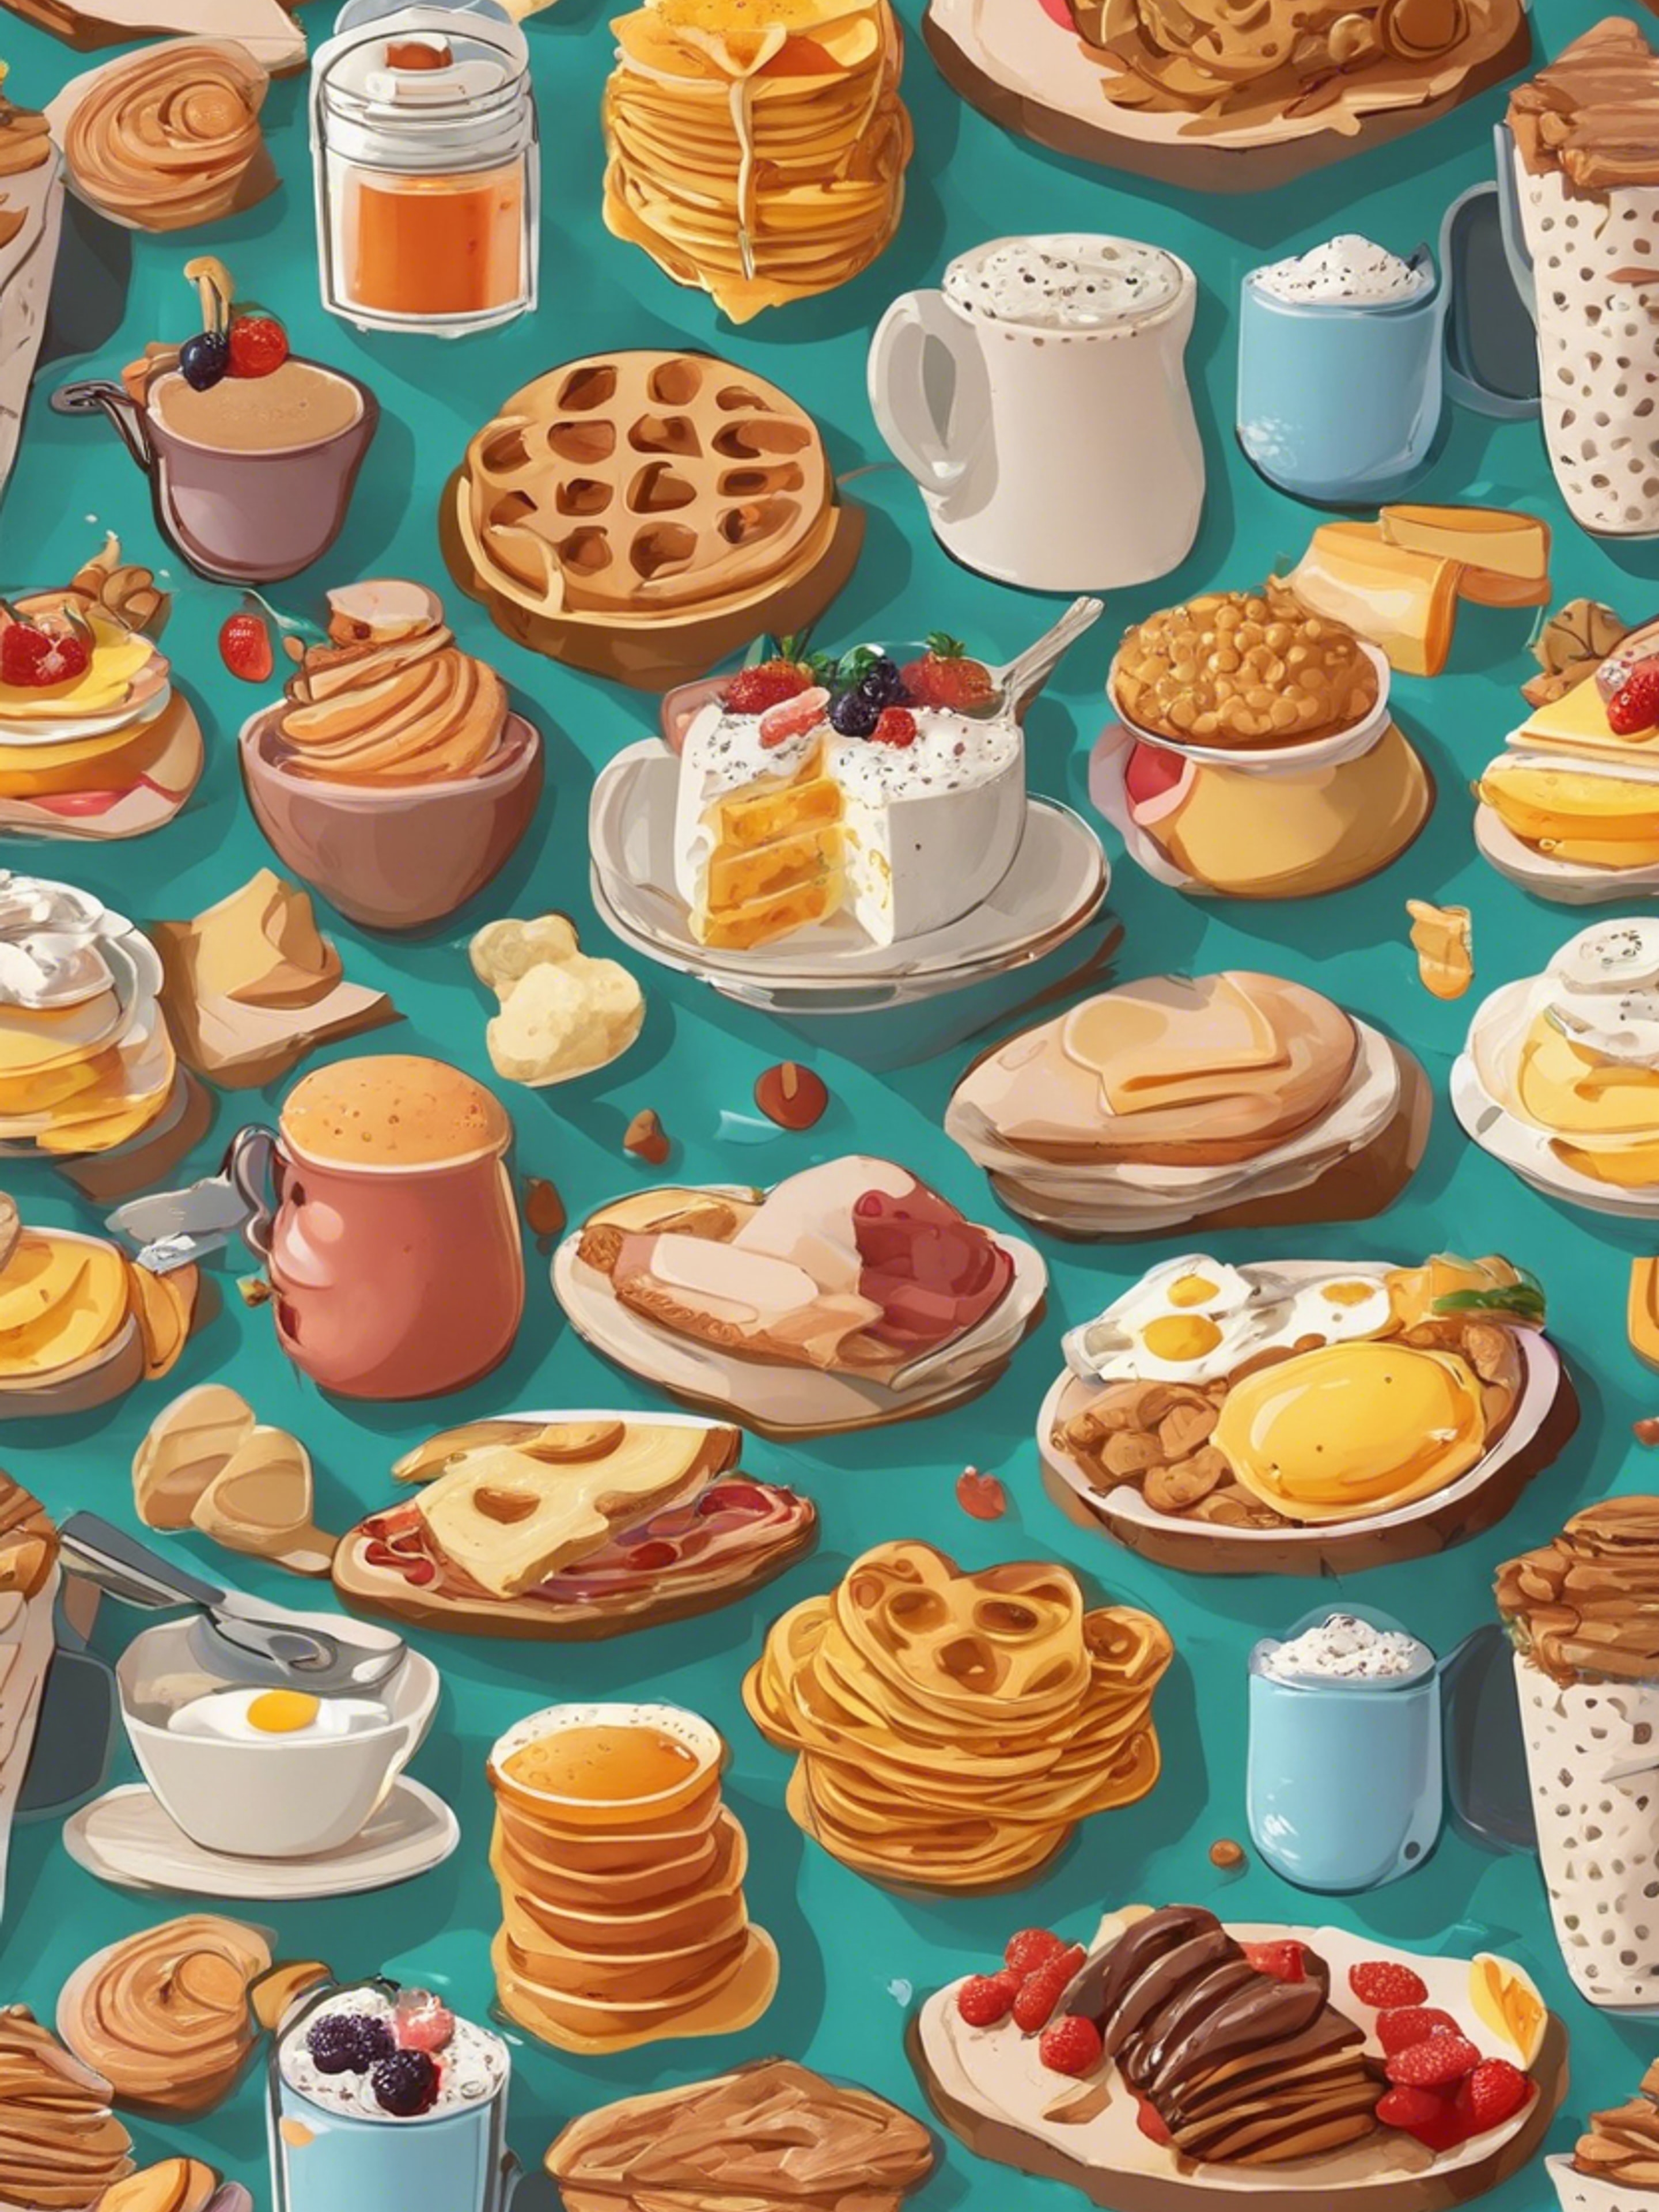 Cartoonish breakfast food items in an appealing, kid-friendly pattern. Wallpaper[fa493d8b255444e69f8d]